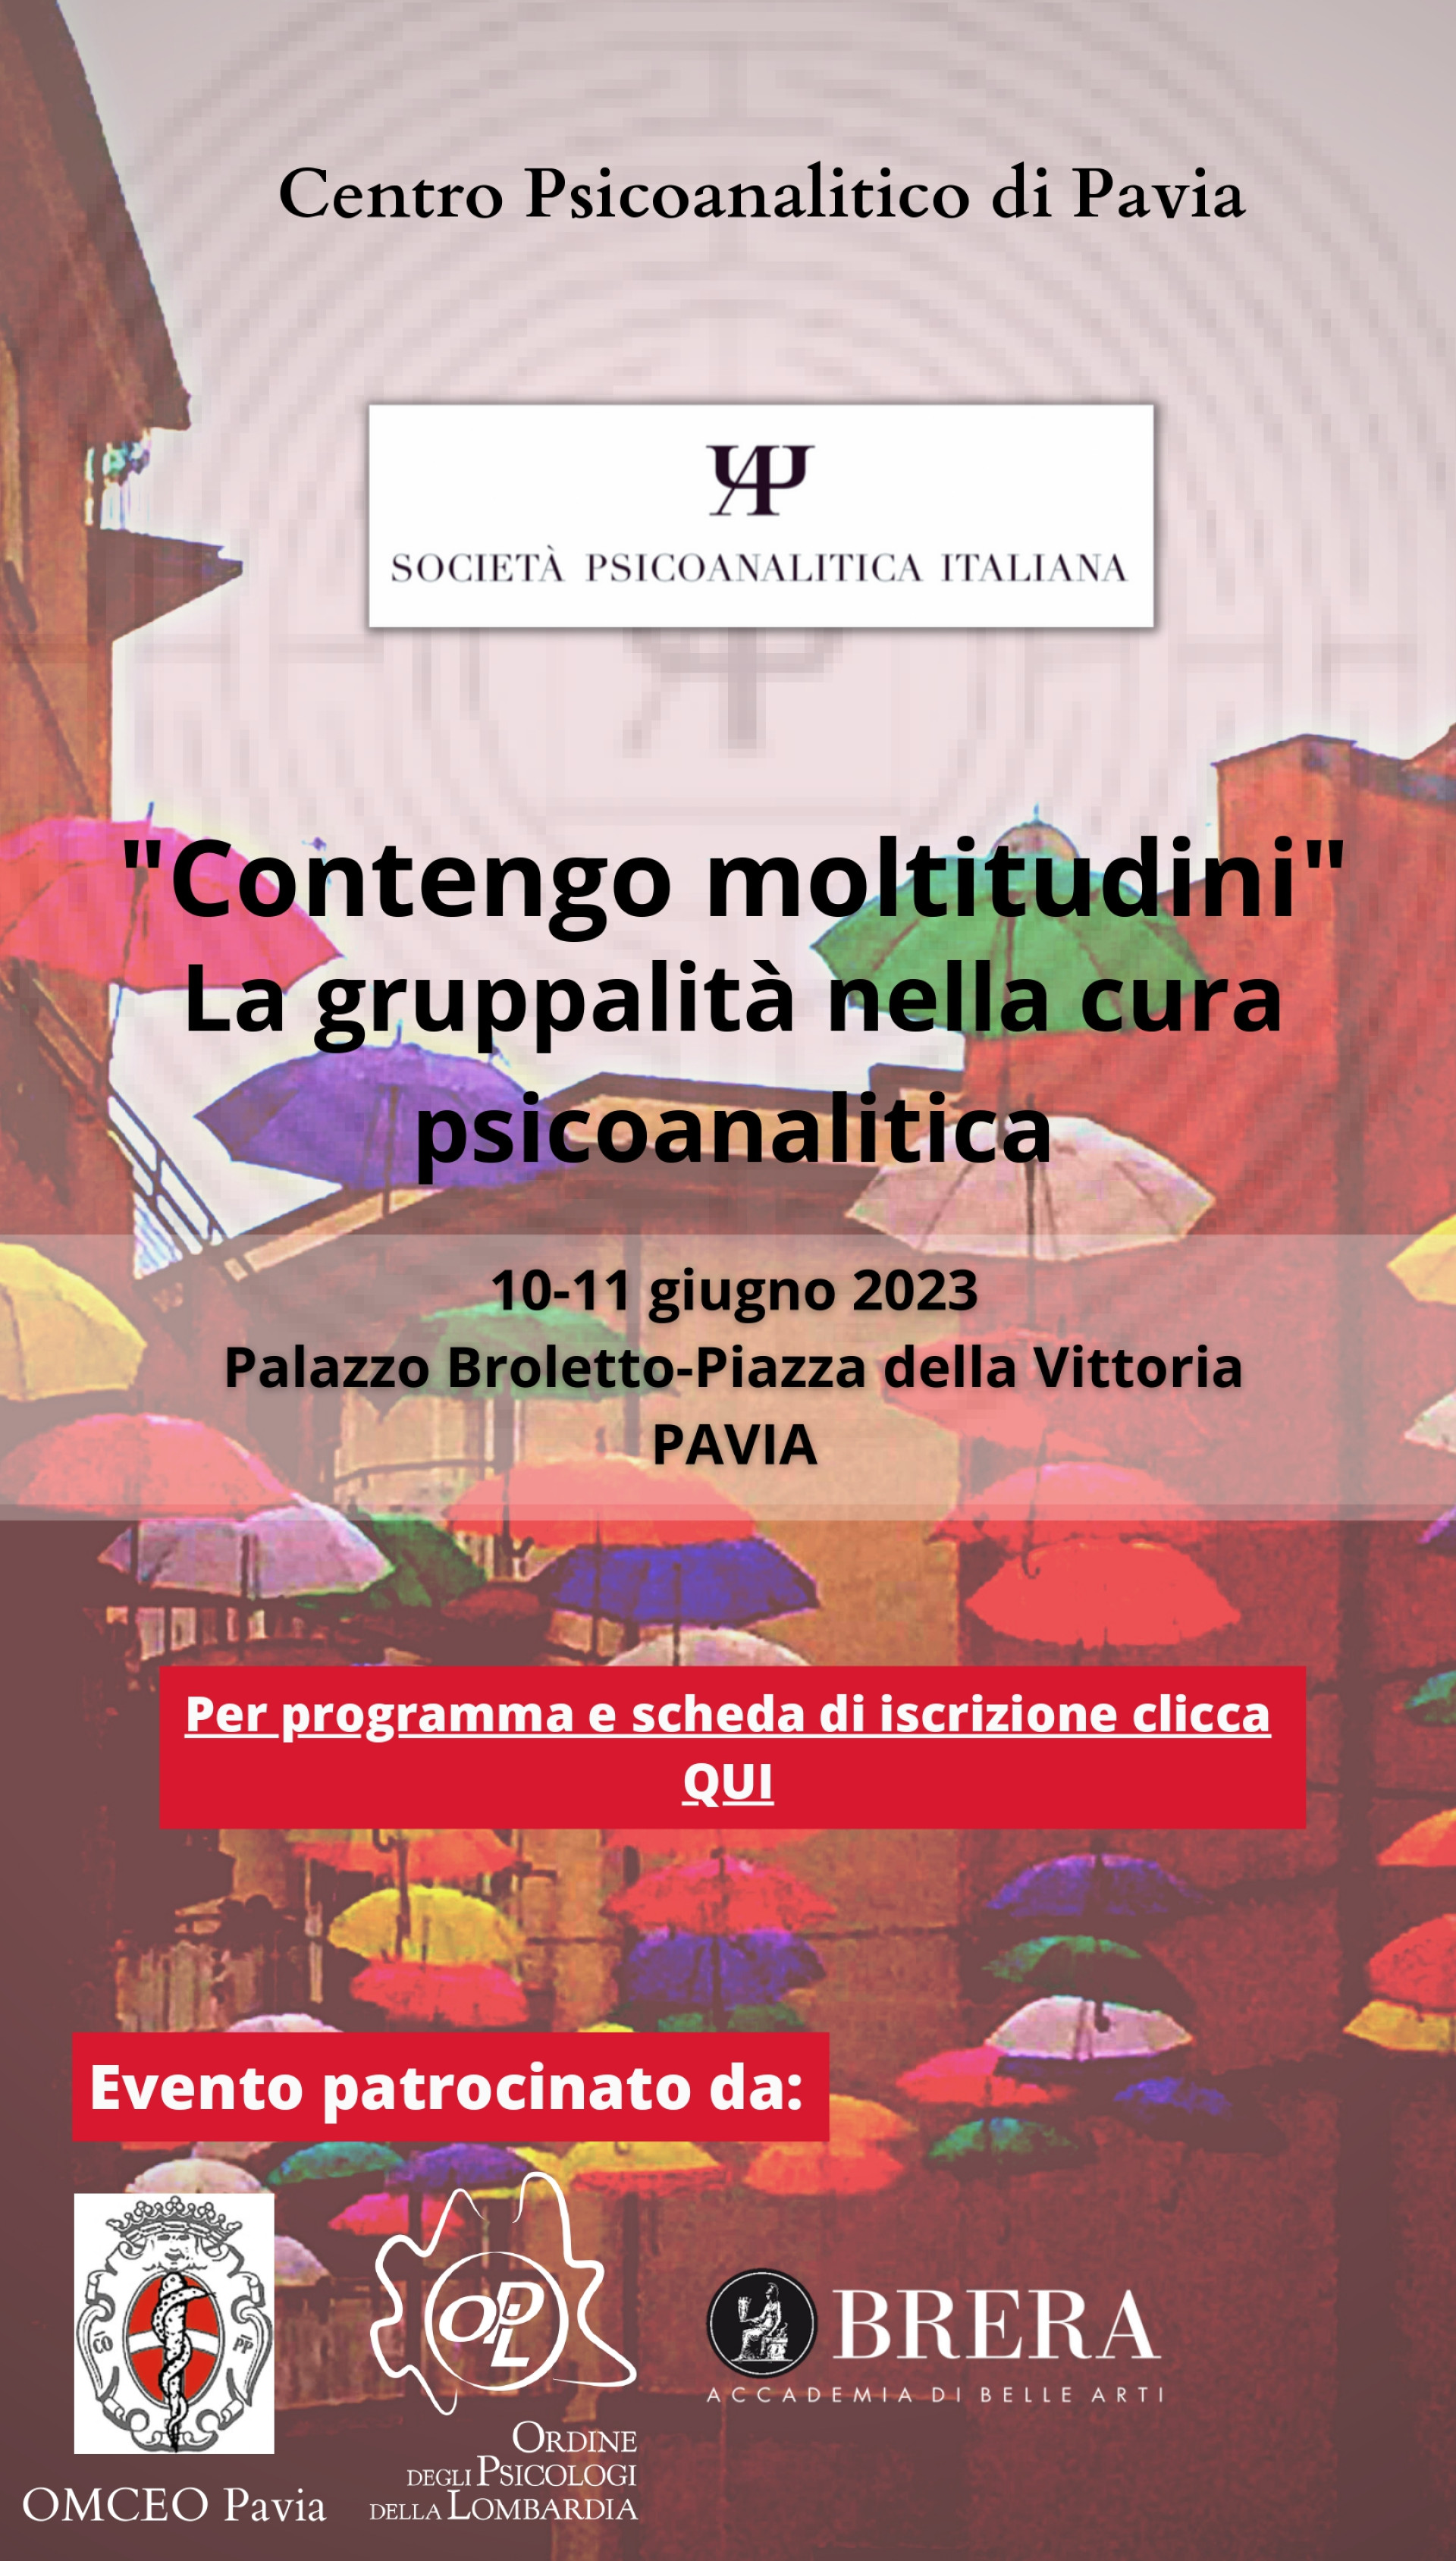 Centro Psicoanalitico di Pavia "Contengo Moltitudini". La gruppalità nella cura psicoanalitica.